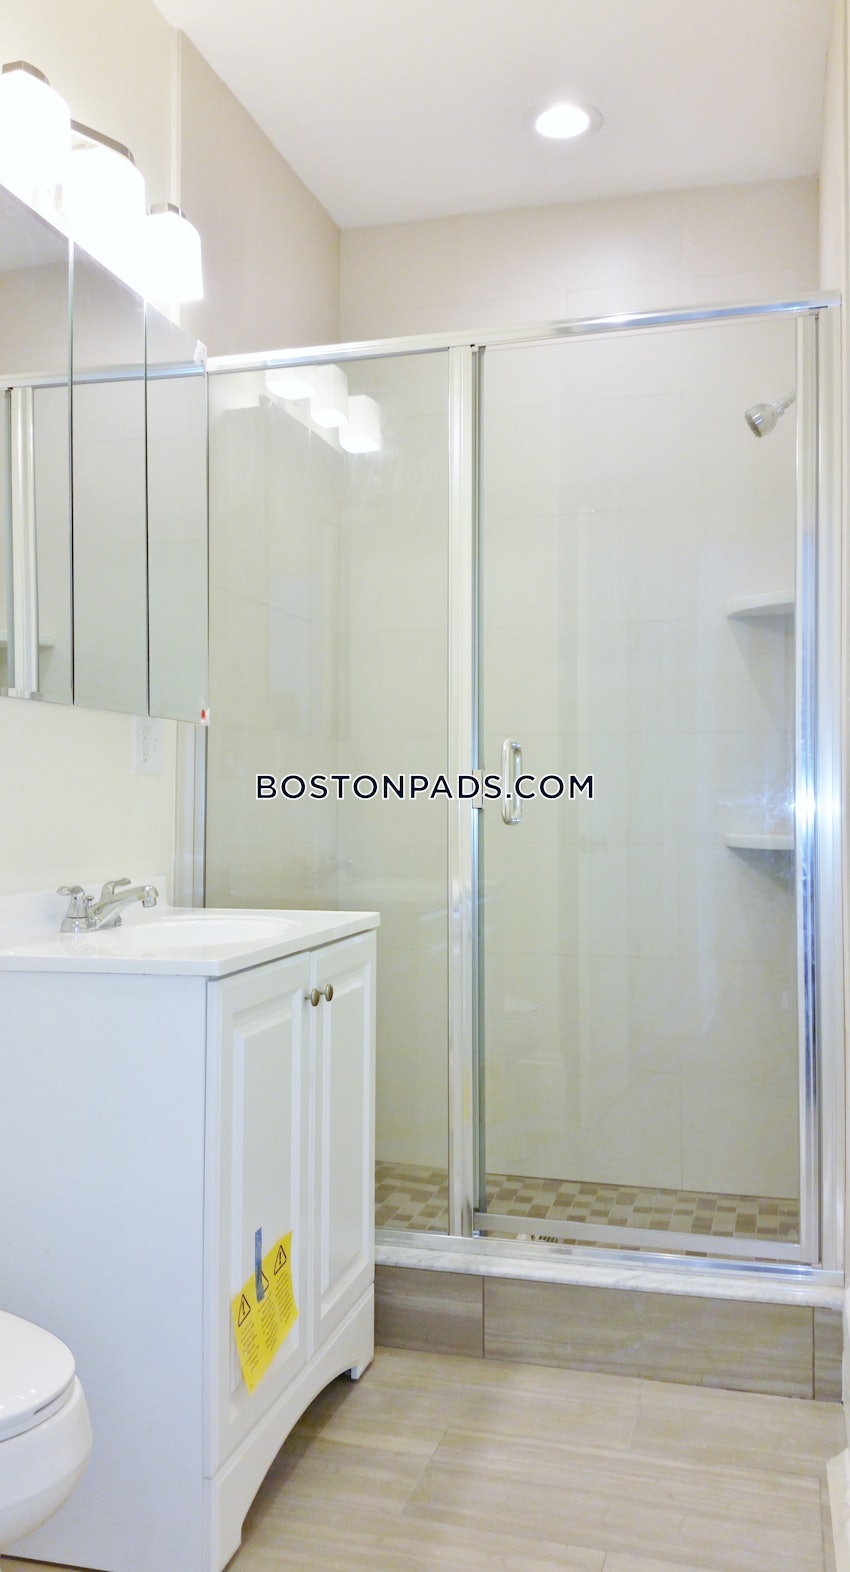 BOSTON - ALLSTON/BRIGHTON BORDER - 4 Beds, 2 Baths - Image 11